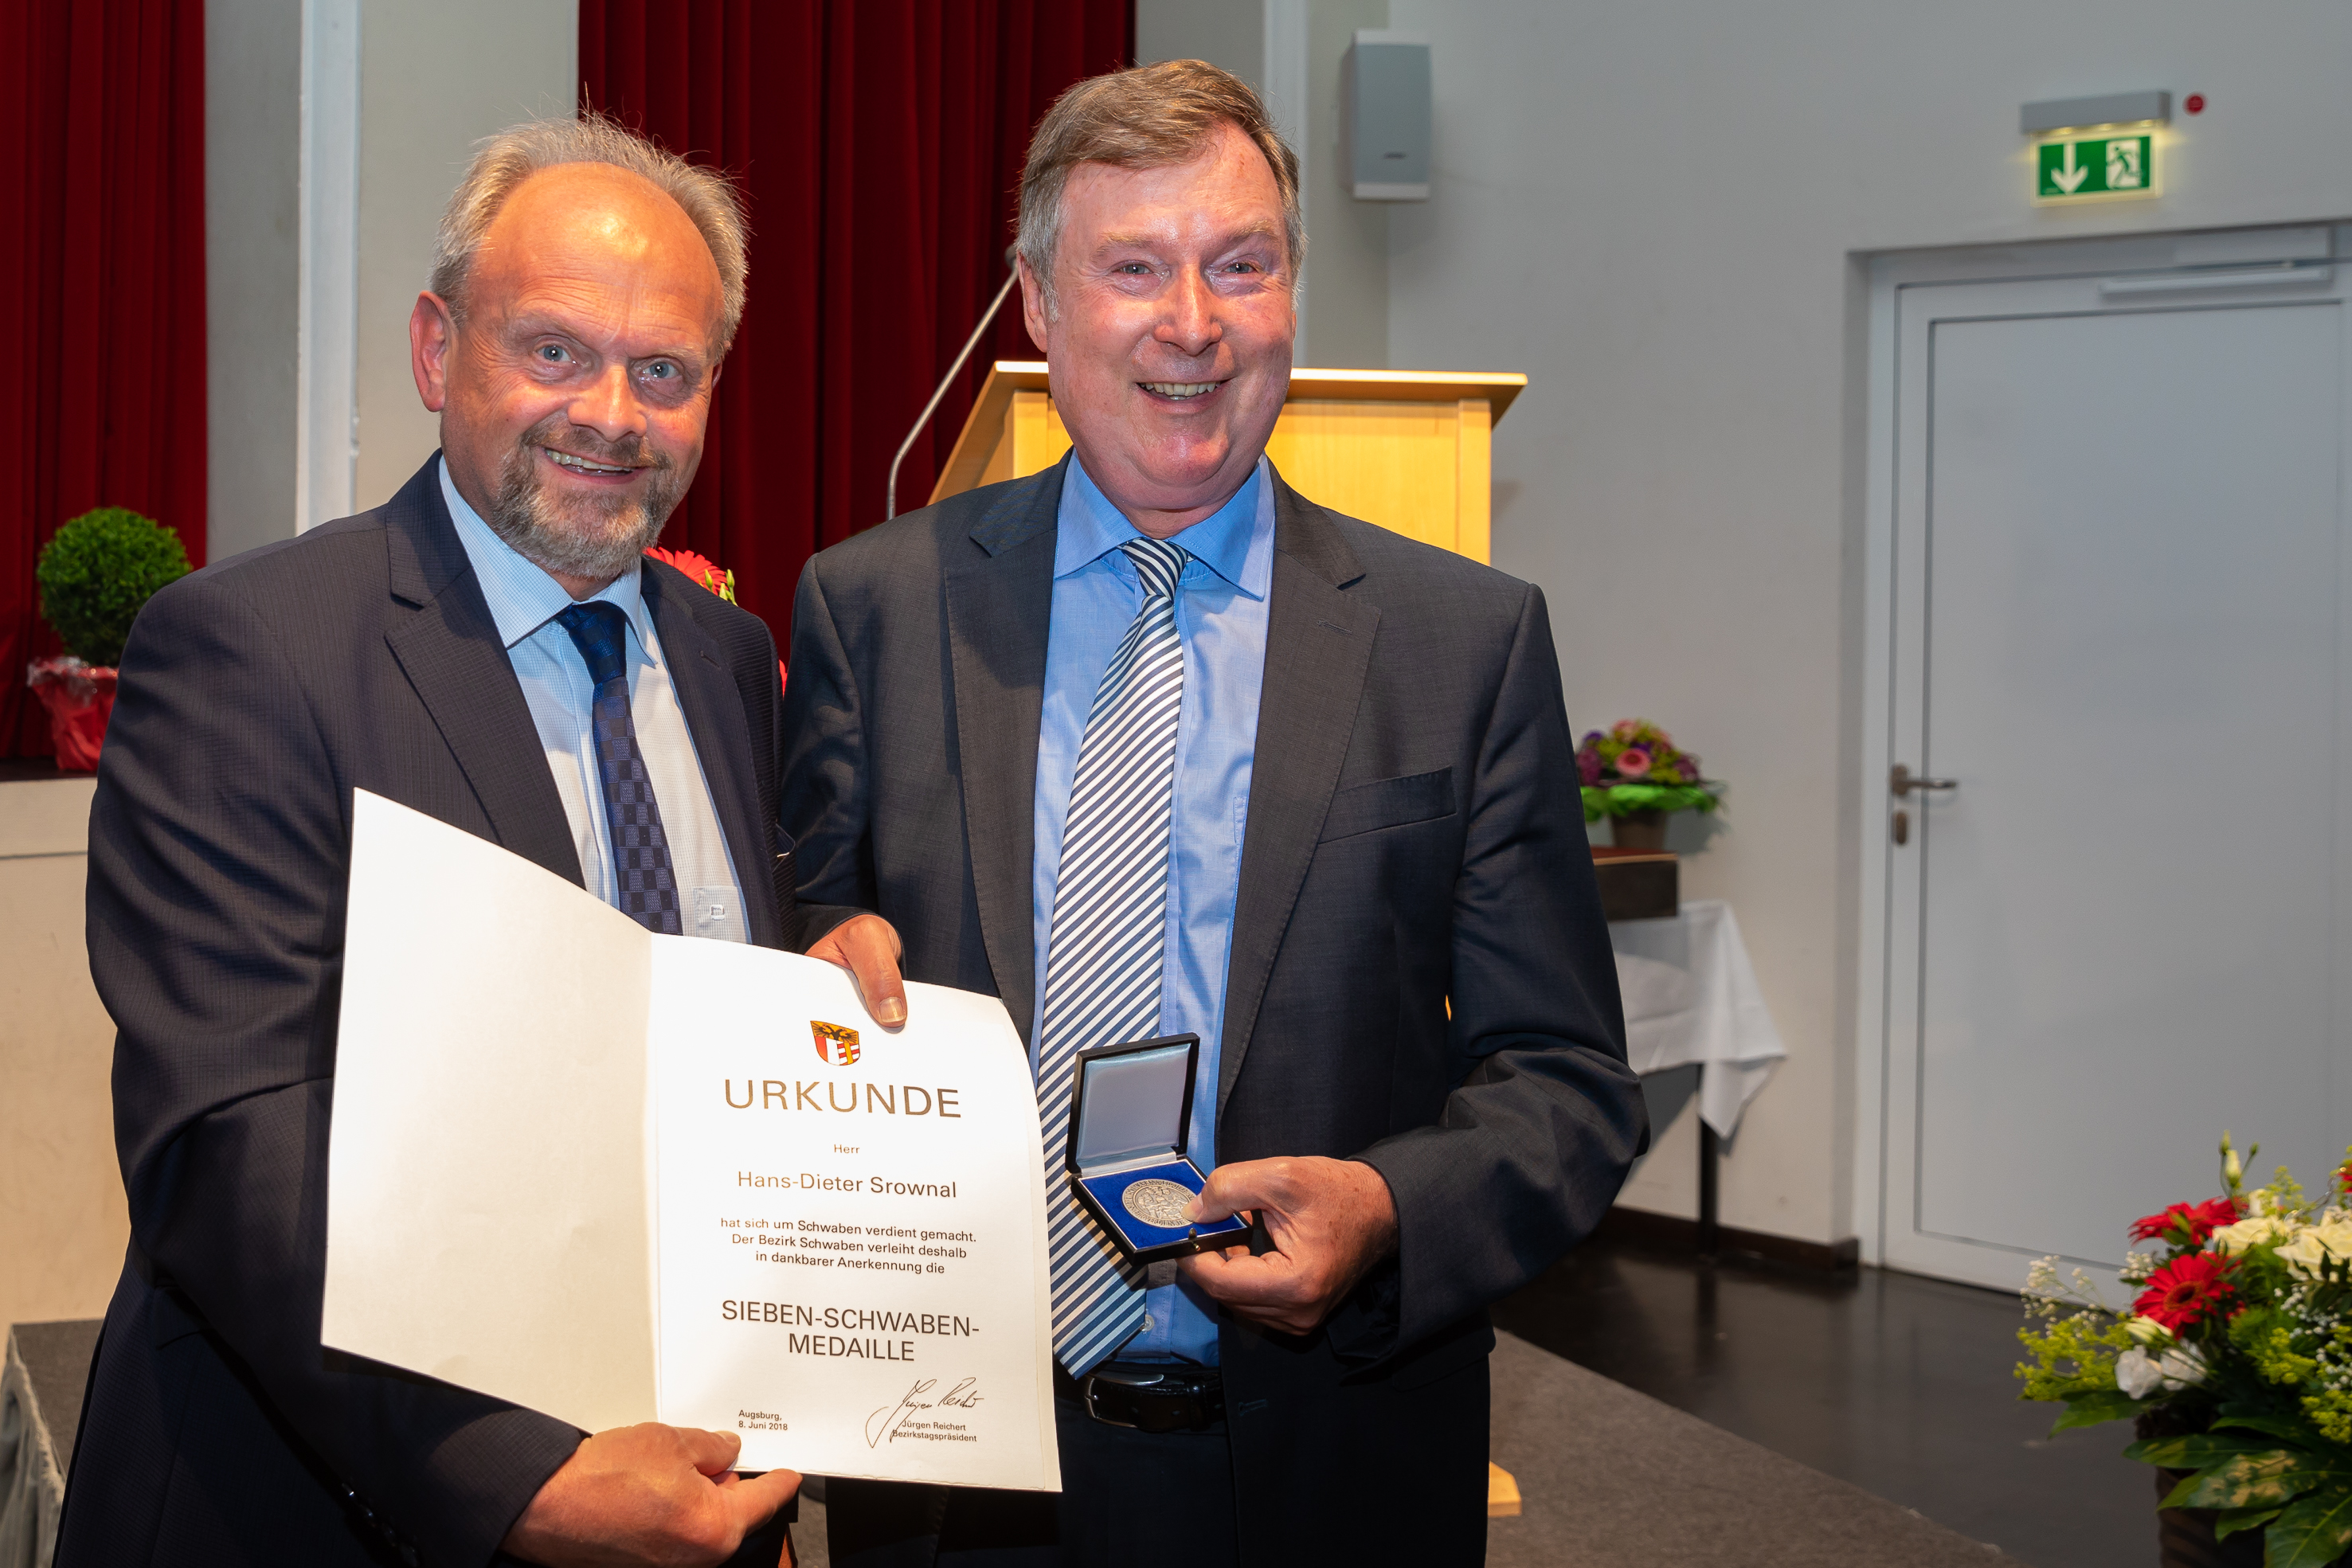 36 Jahre im Dienst für Menschen mit Behinderung: Hans-Dieter Srownal beim Dominikus-Ringeisen-Werk in den Ruhestand verabschiedet